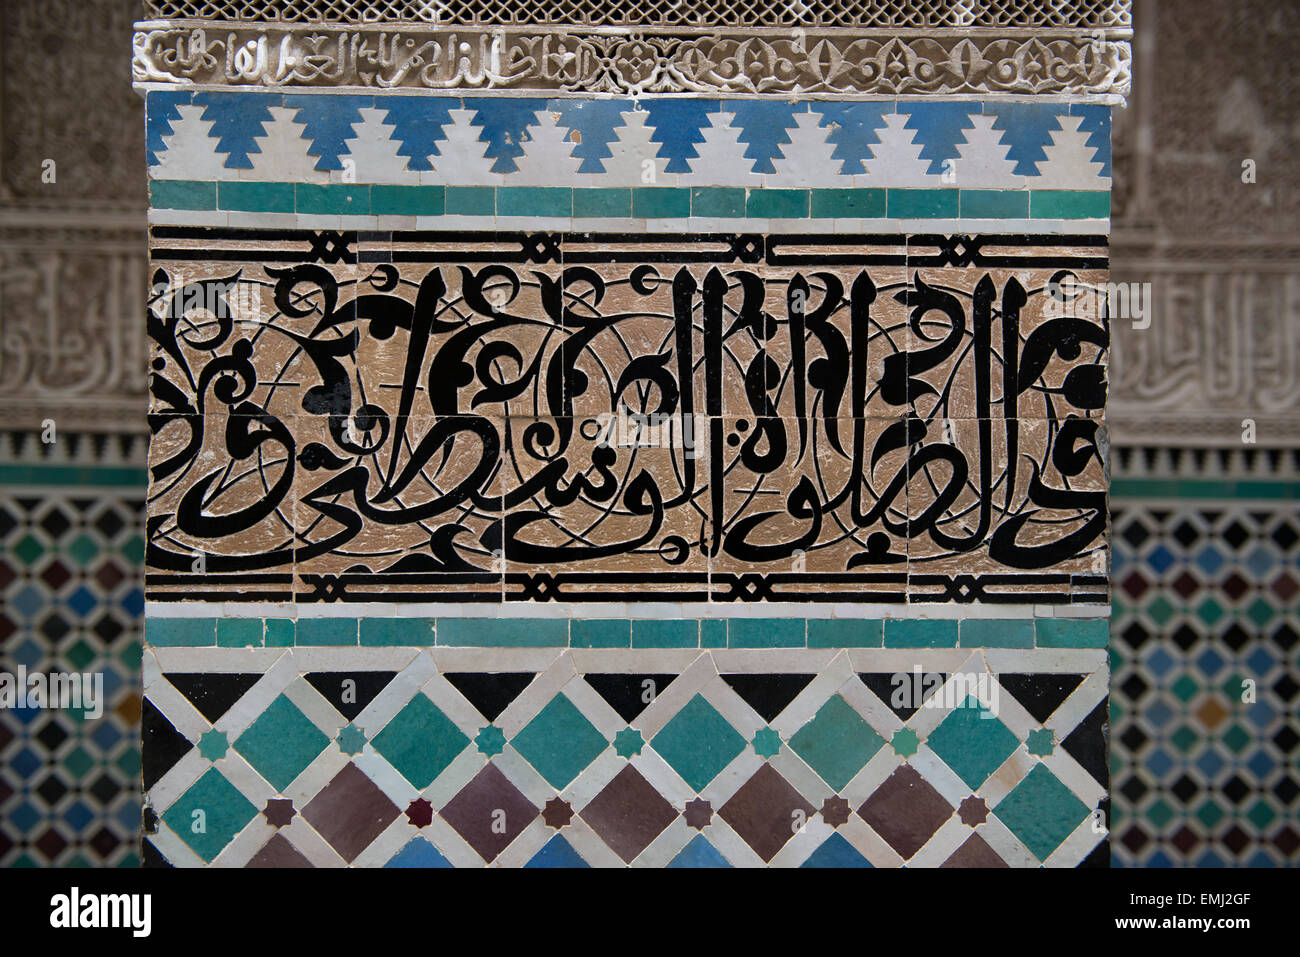 Al Attarine, Madrasa, l'école coranique à Fes, Maroc. Détail de l'écriture arabe sculptée dans la tuile, la plus haute forme d'art dans les madrasas Banque D'Images